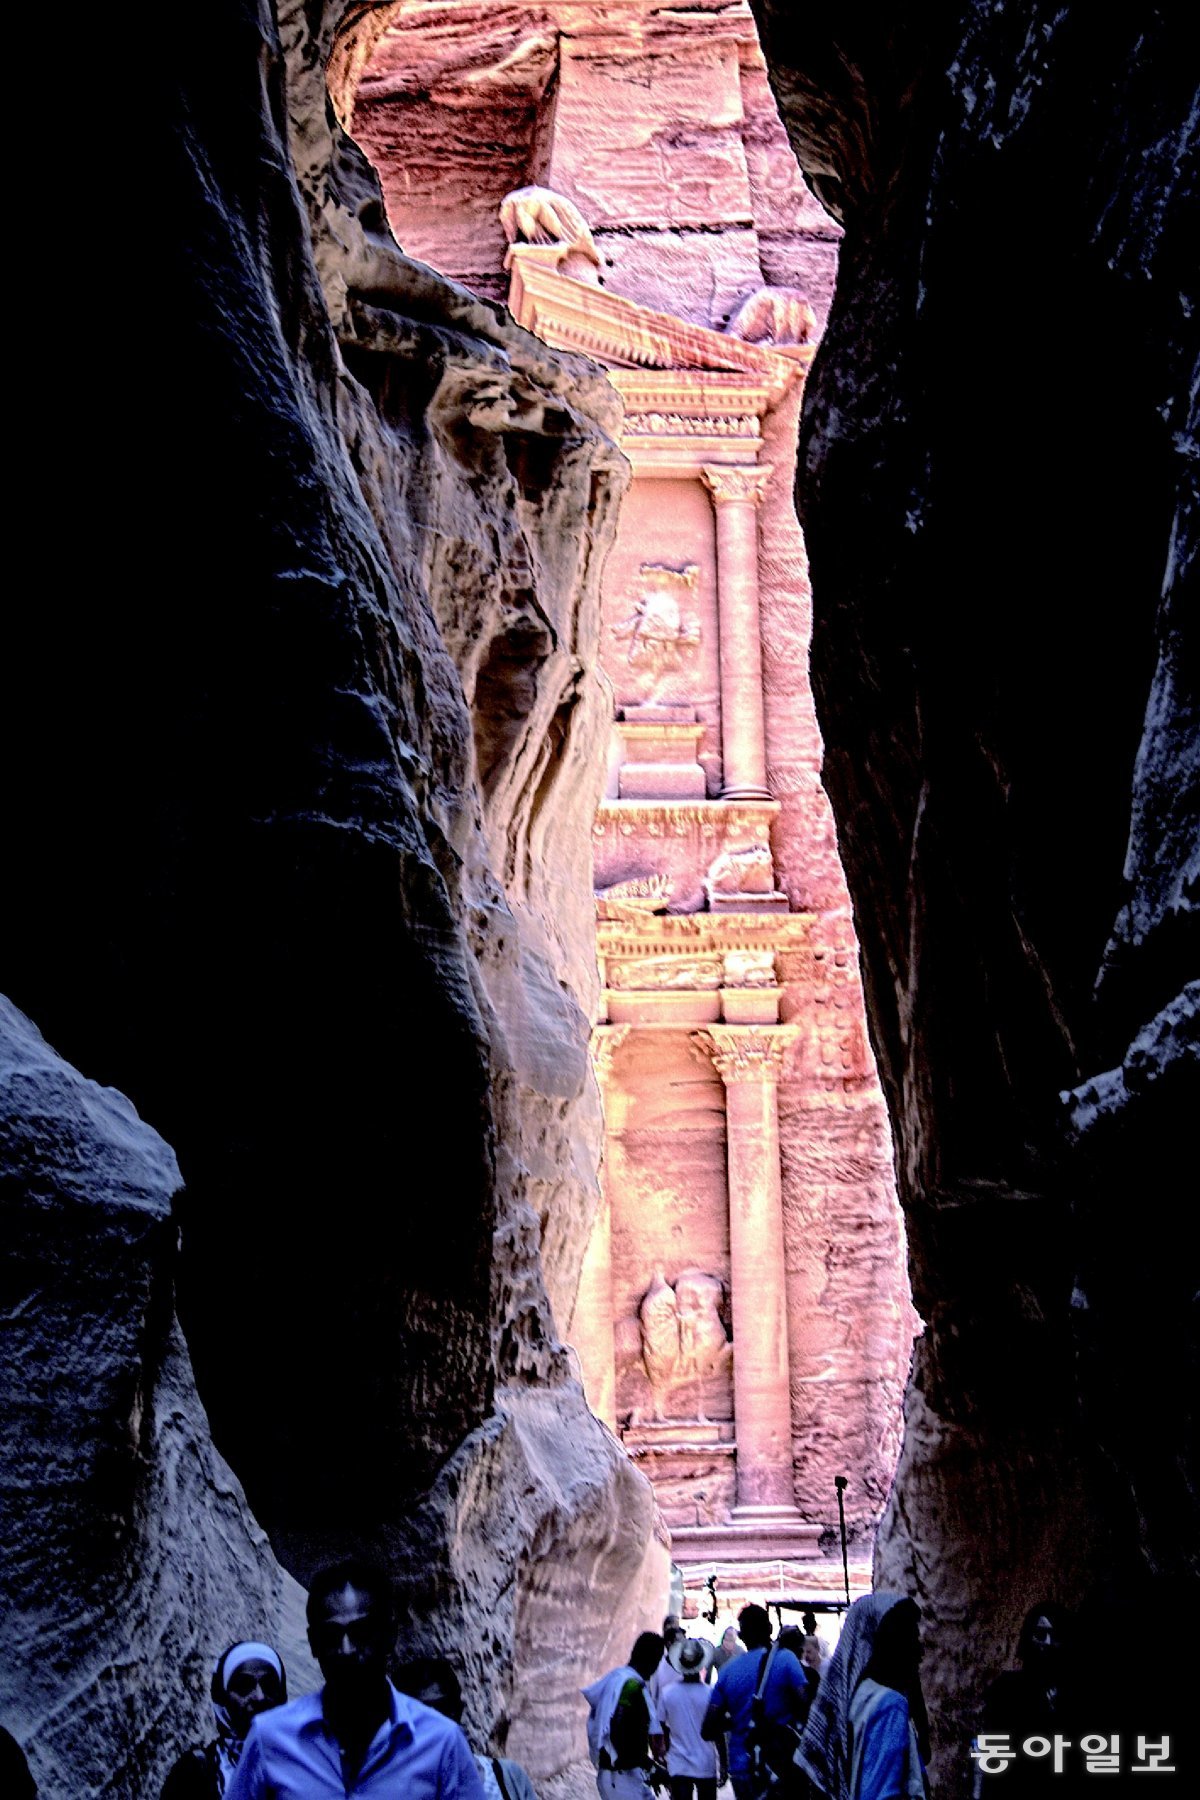 요르단 페트라의 1.2km 구간의 바위 협곡인 알시끄를 지나면 웅장한 건축물인 알카즈네흐가 나타난다.